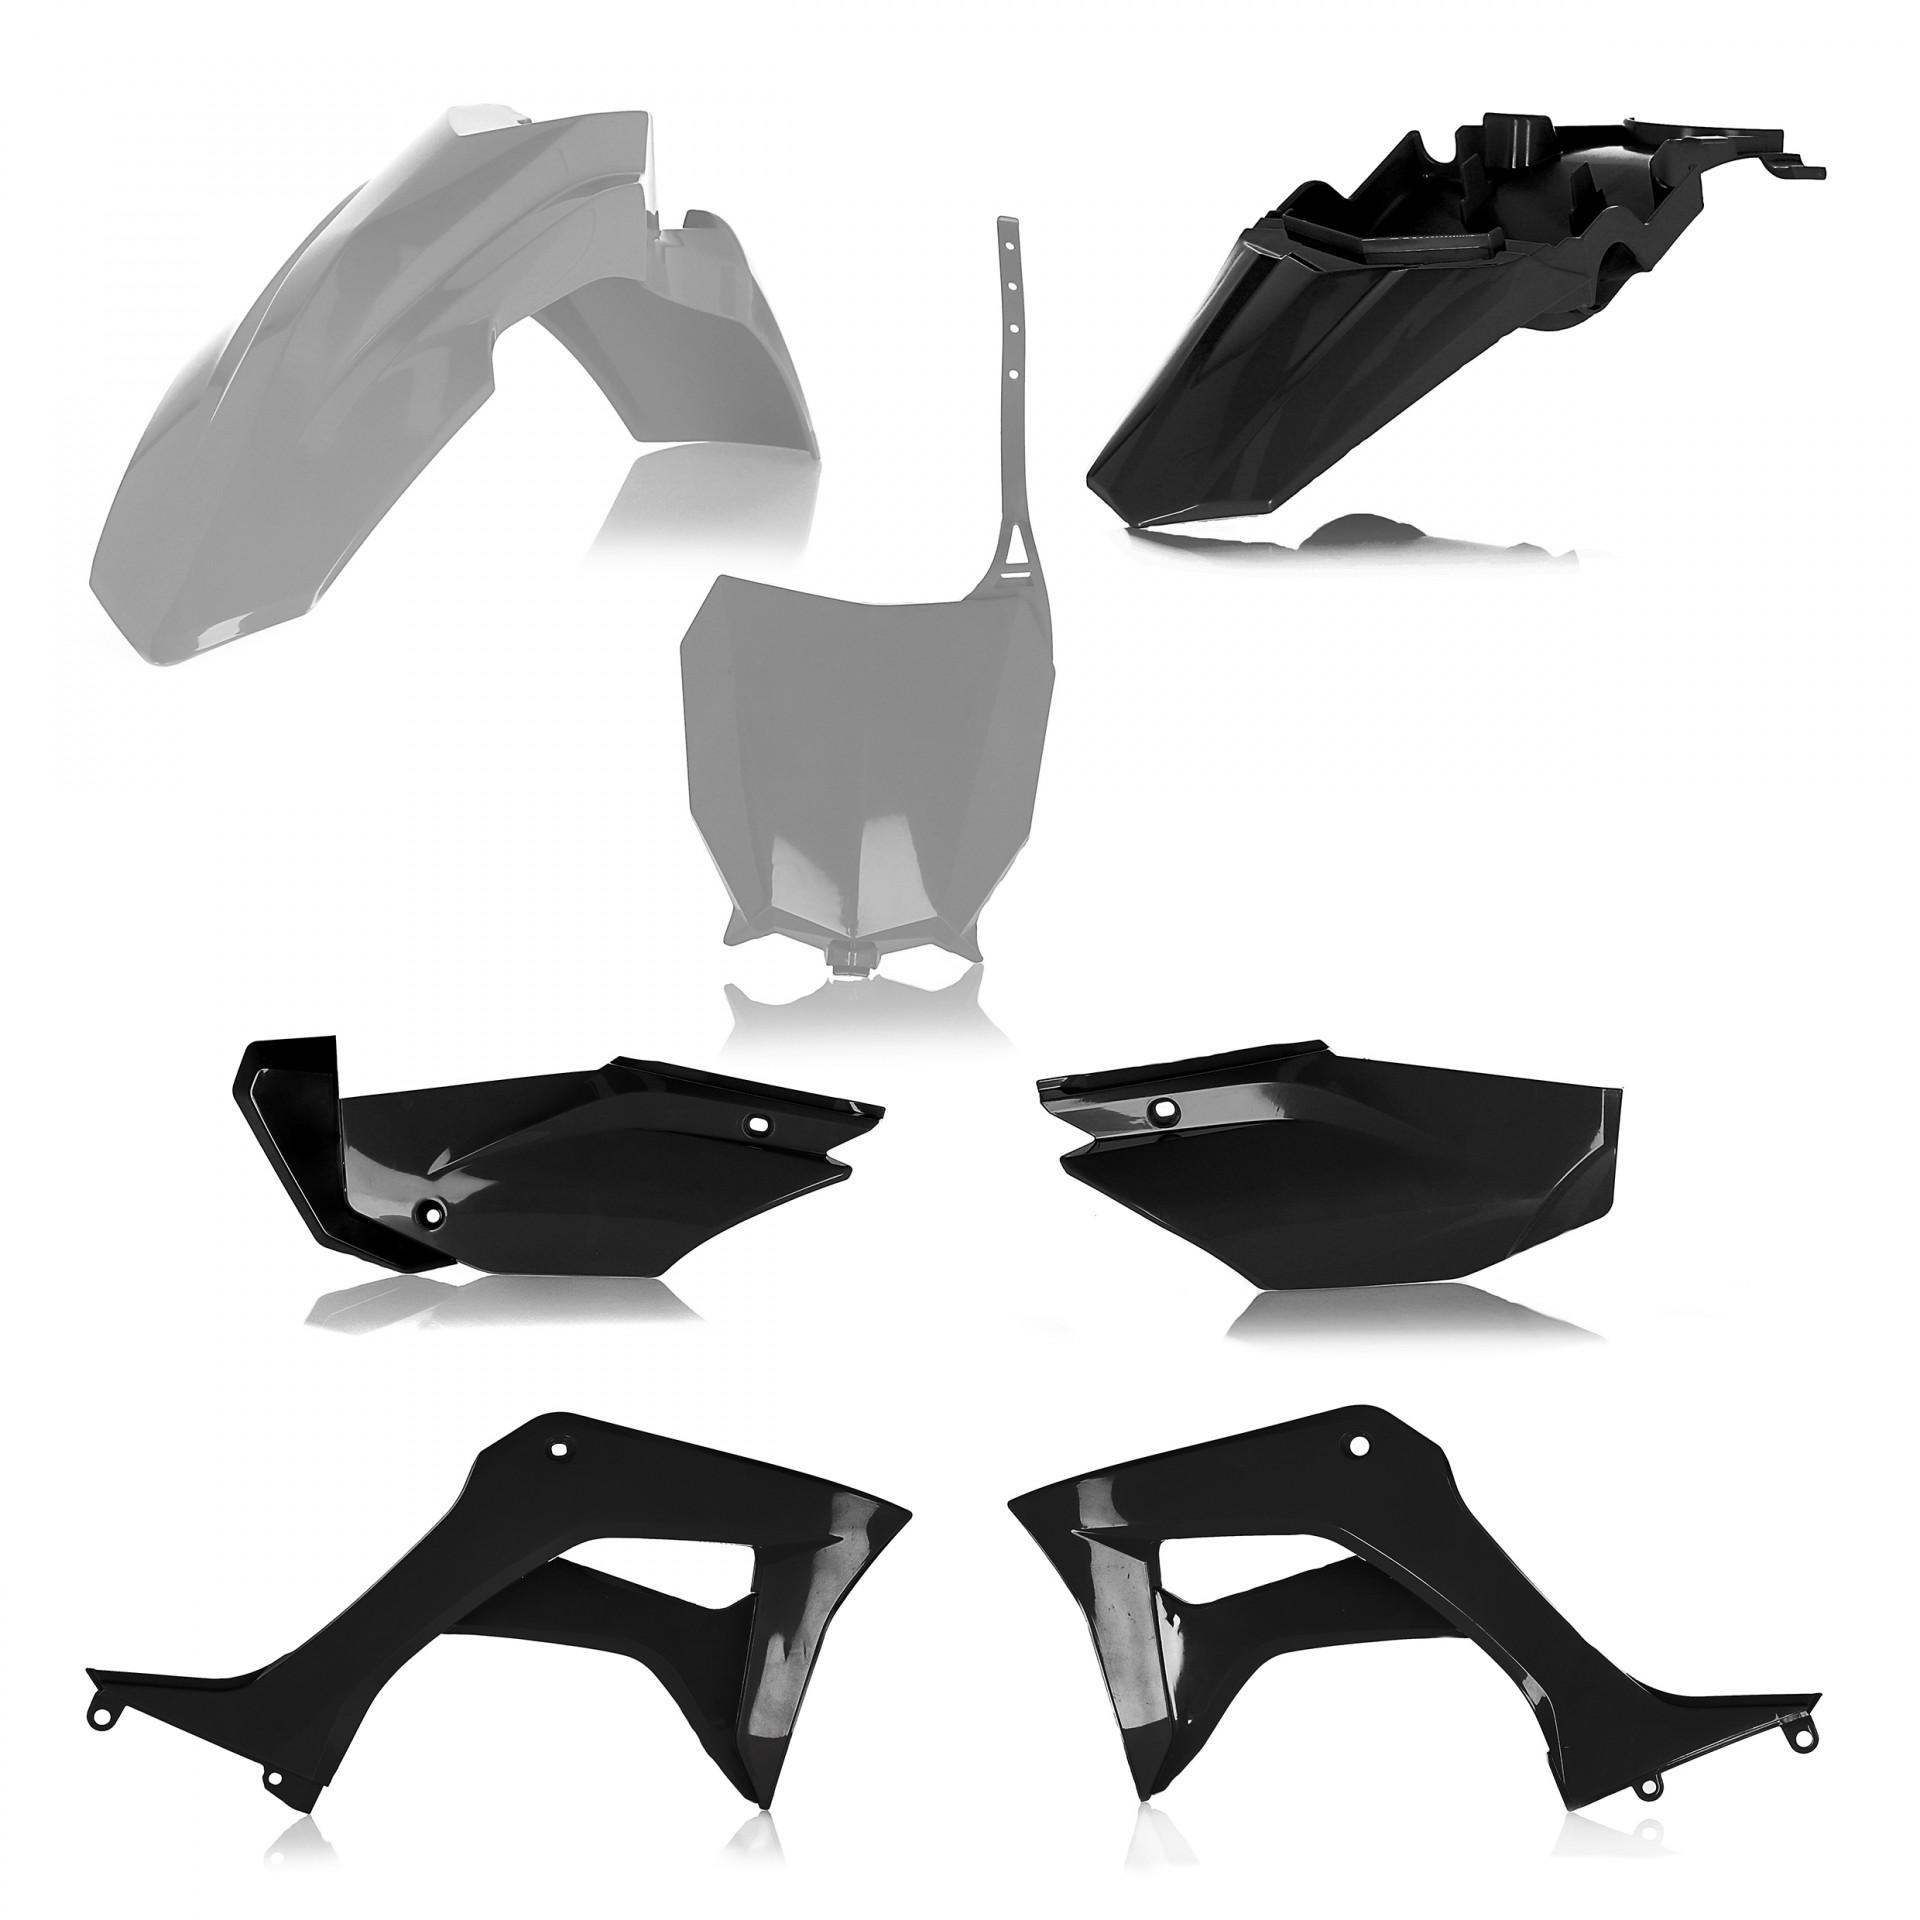 Plastikteile für deine Honda CRF / CR 110 in grau-schwarz bestehend aus Kotflügel vorn Kotflügel hinten Kühlerspoiler Seitenteile Startnummerntafel